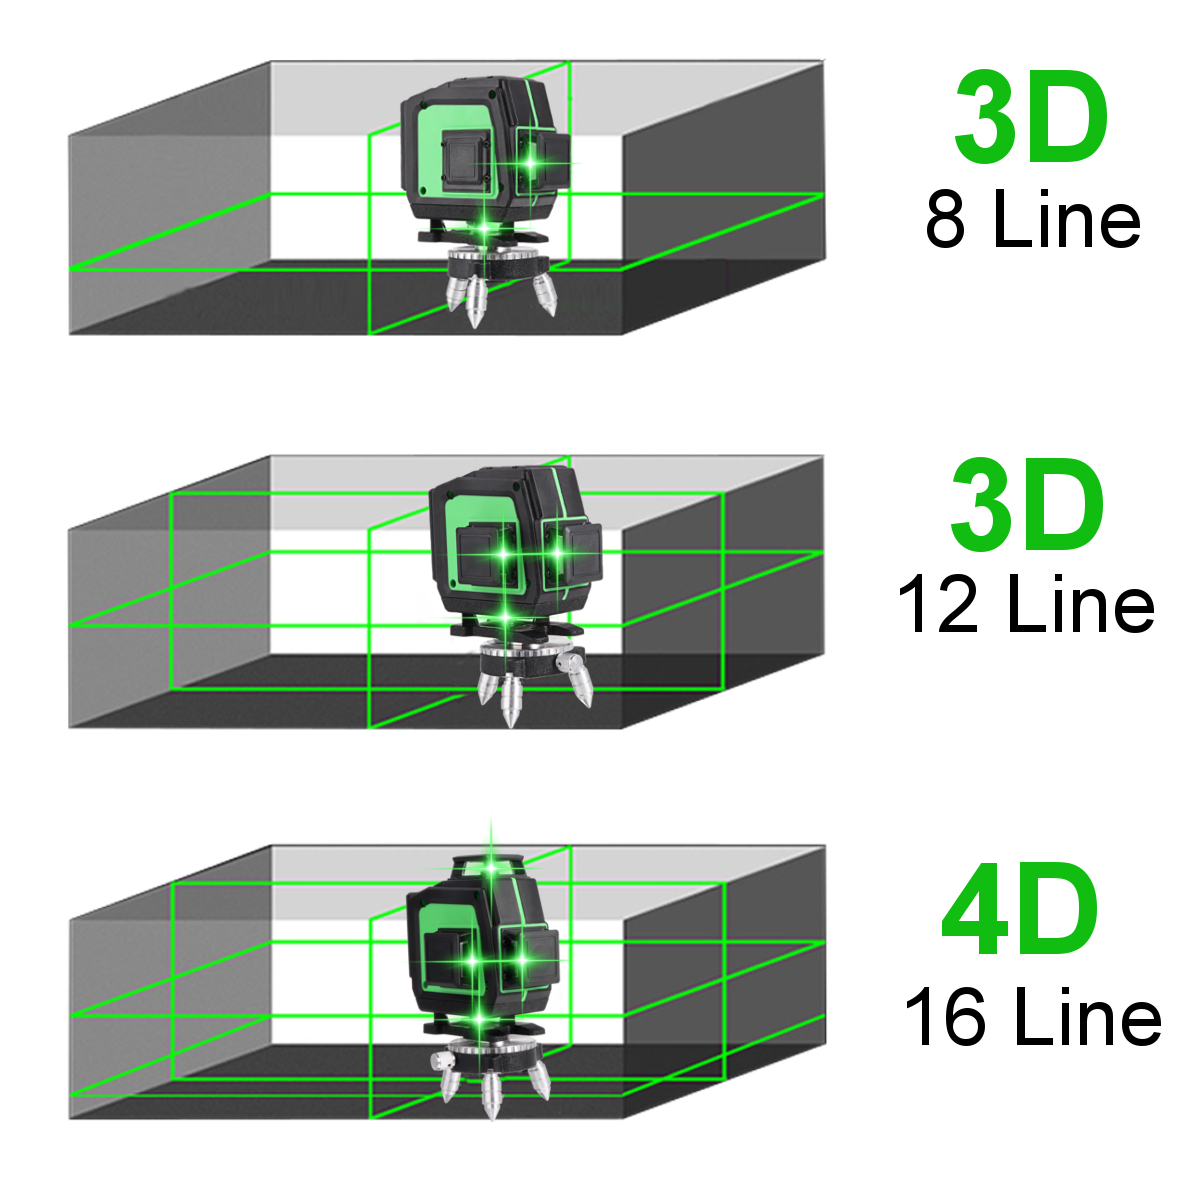 81216-Line-360deg-4D-Horizontal-Vertical-Cross-Green-Light-Laser-Level-Self-Leveling-Measure-Super-P-1866050-3